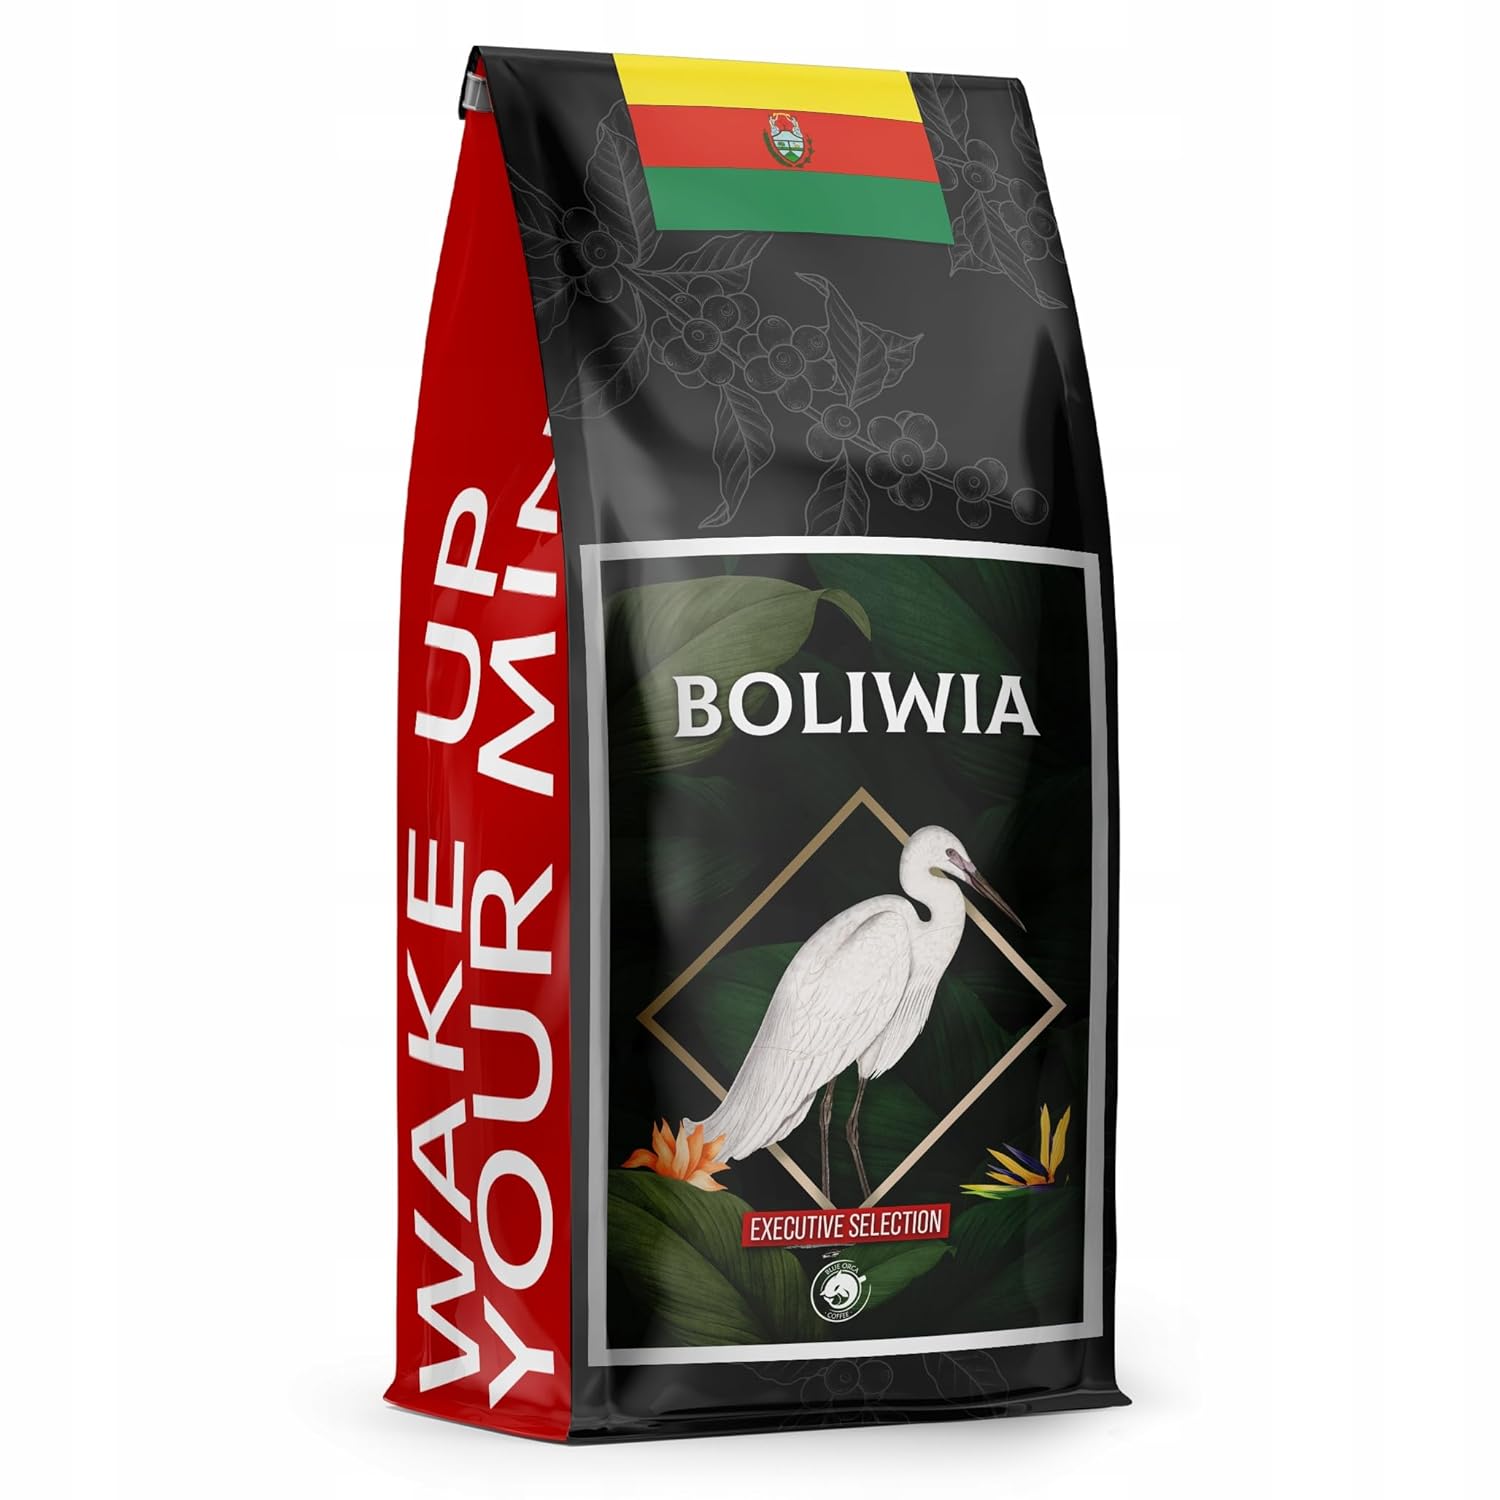 Blue Orca Coffee - BOLIWIA - Specialty Kaffeebohnen aus Bolivien - Frisch geröstet - Single Origin - SCA 83 Punkte, 1 kg
